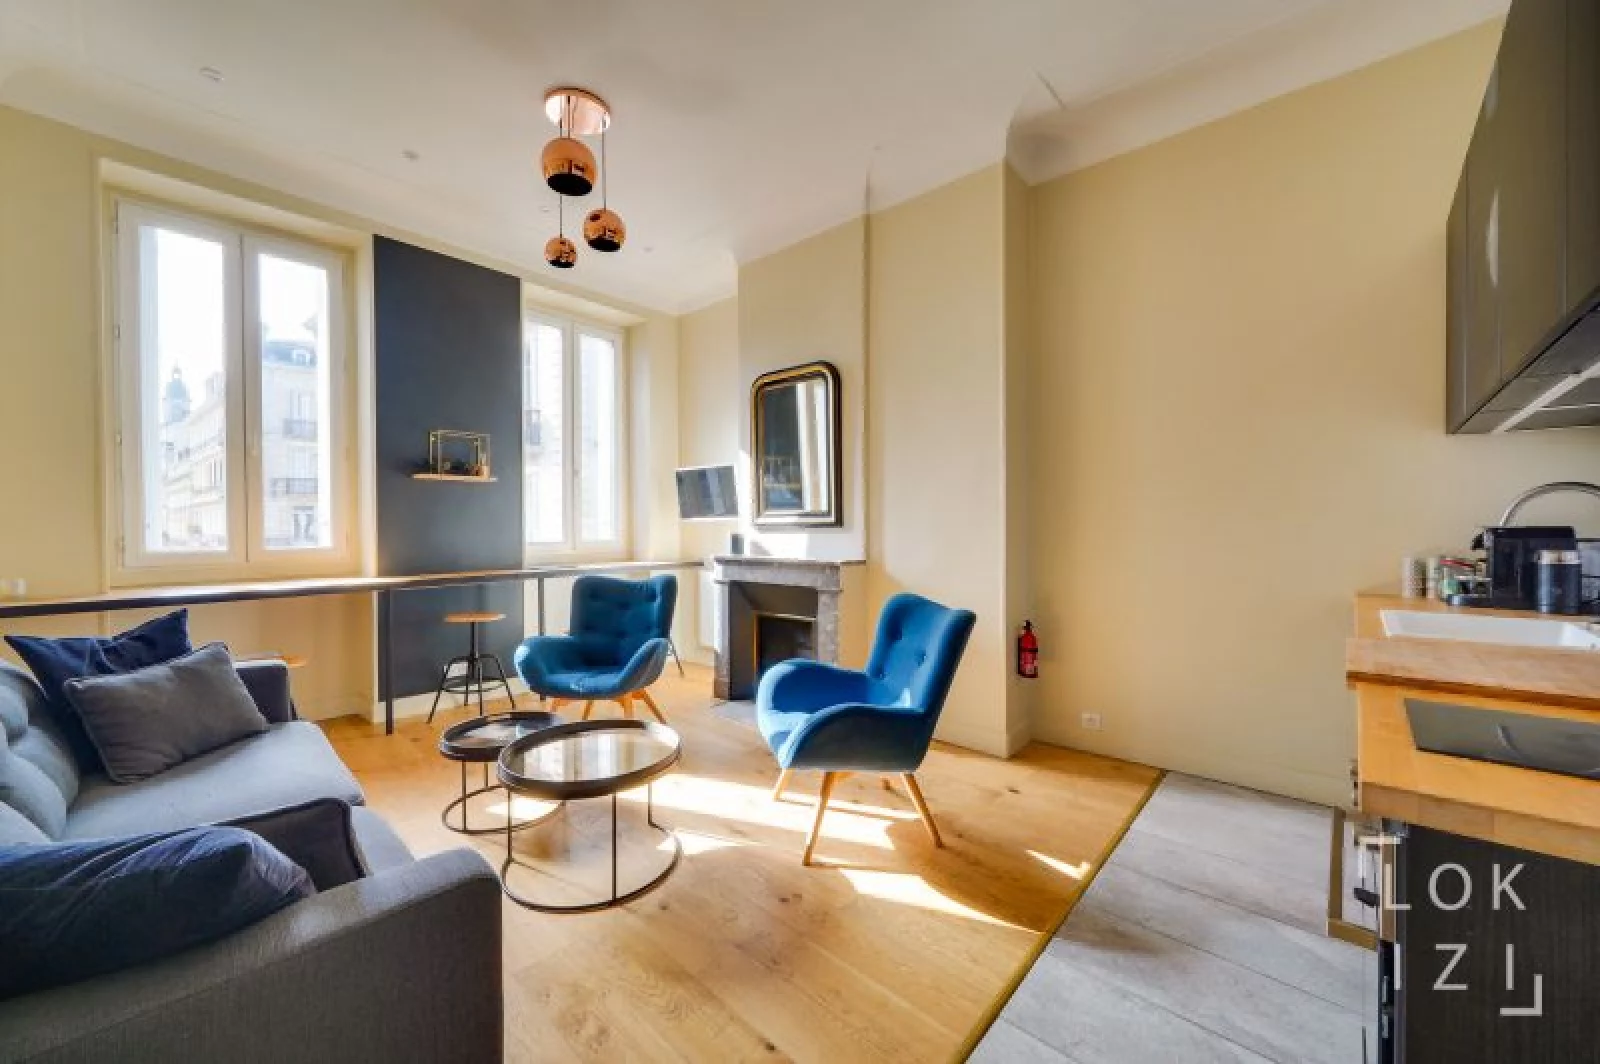 Location appartement duplex meublé 3 pièces (Bordeaux centre)